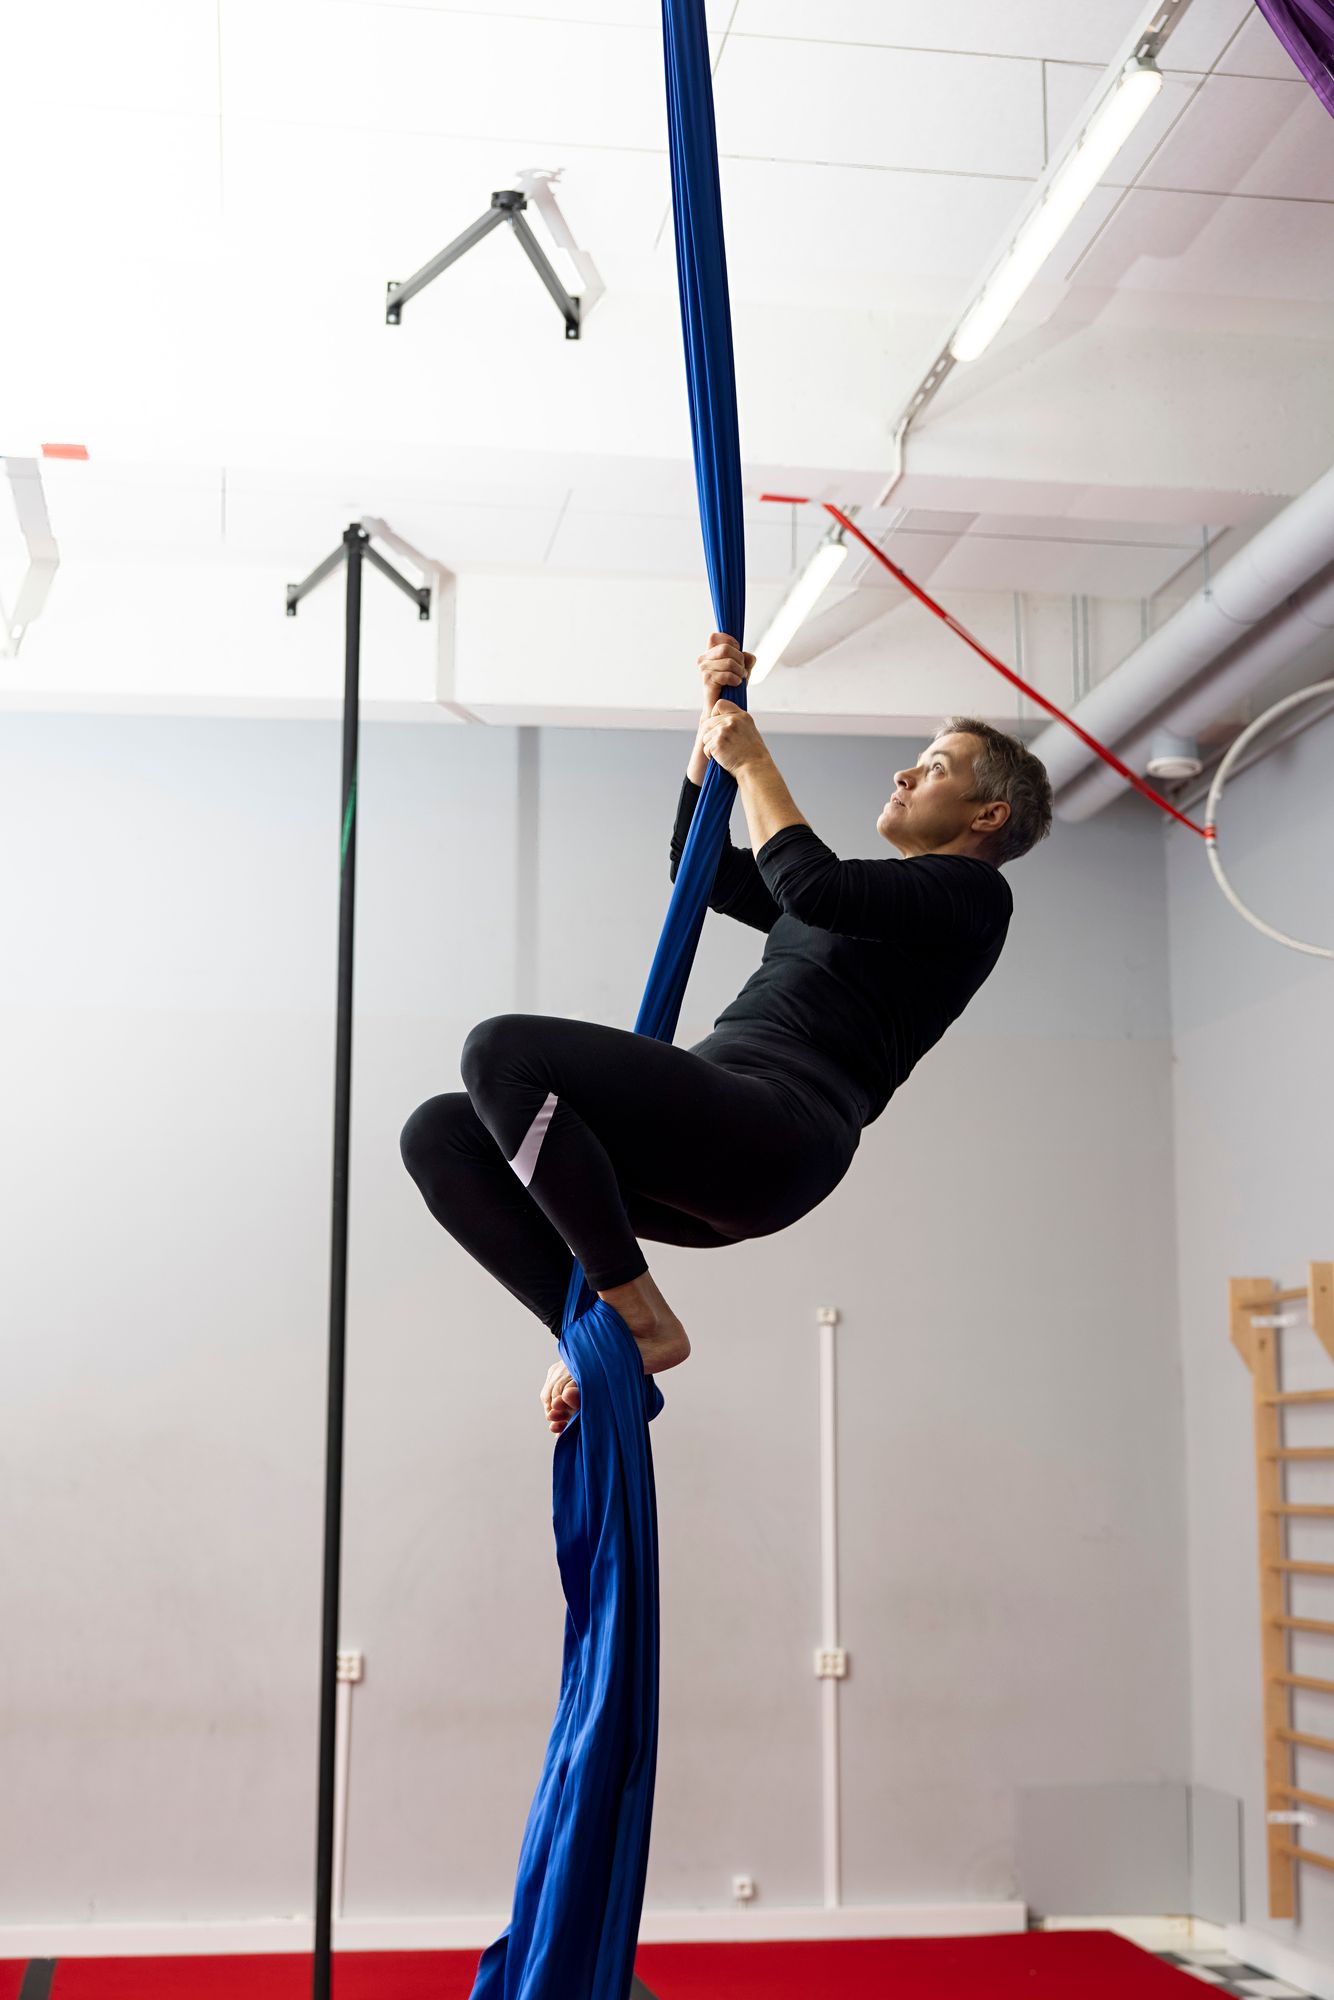 Elinasta ilma-akrobatiassa tärkeintä on uskallus kokeilla uutta. © Tommi Tuomi